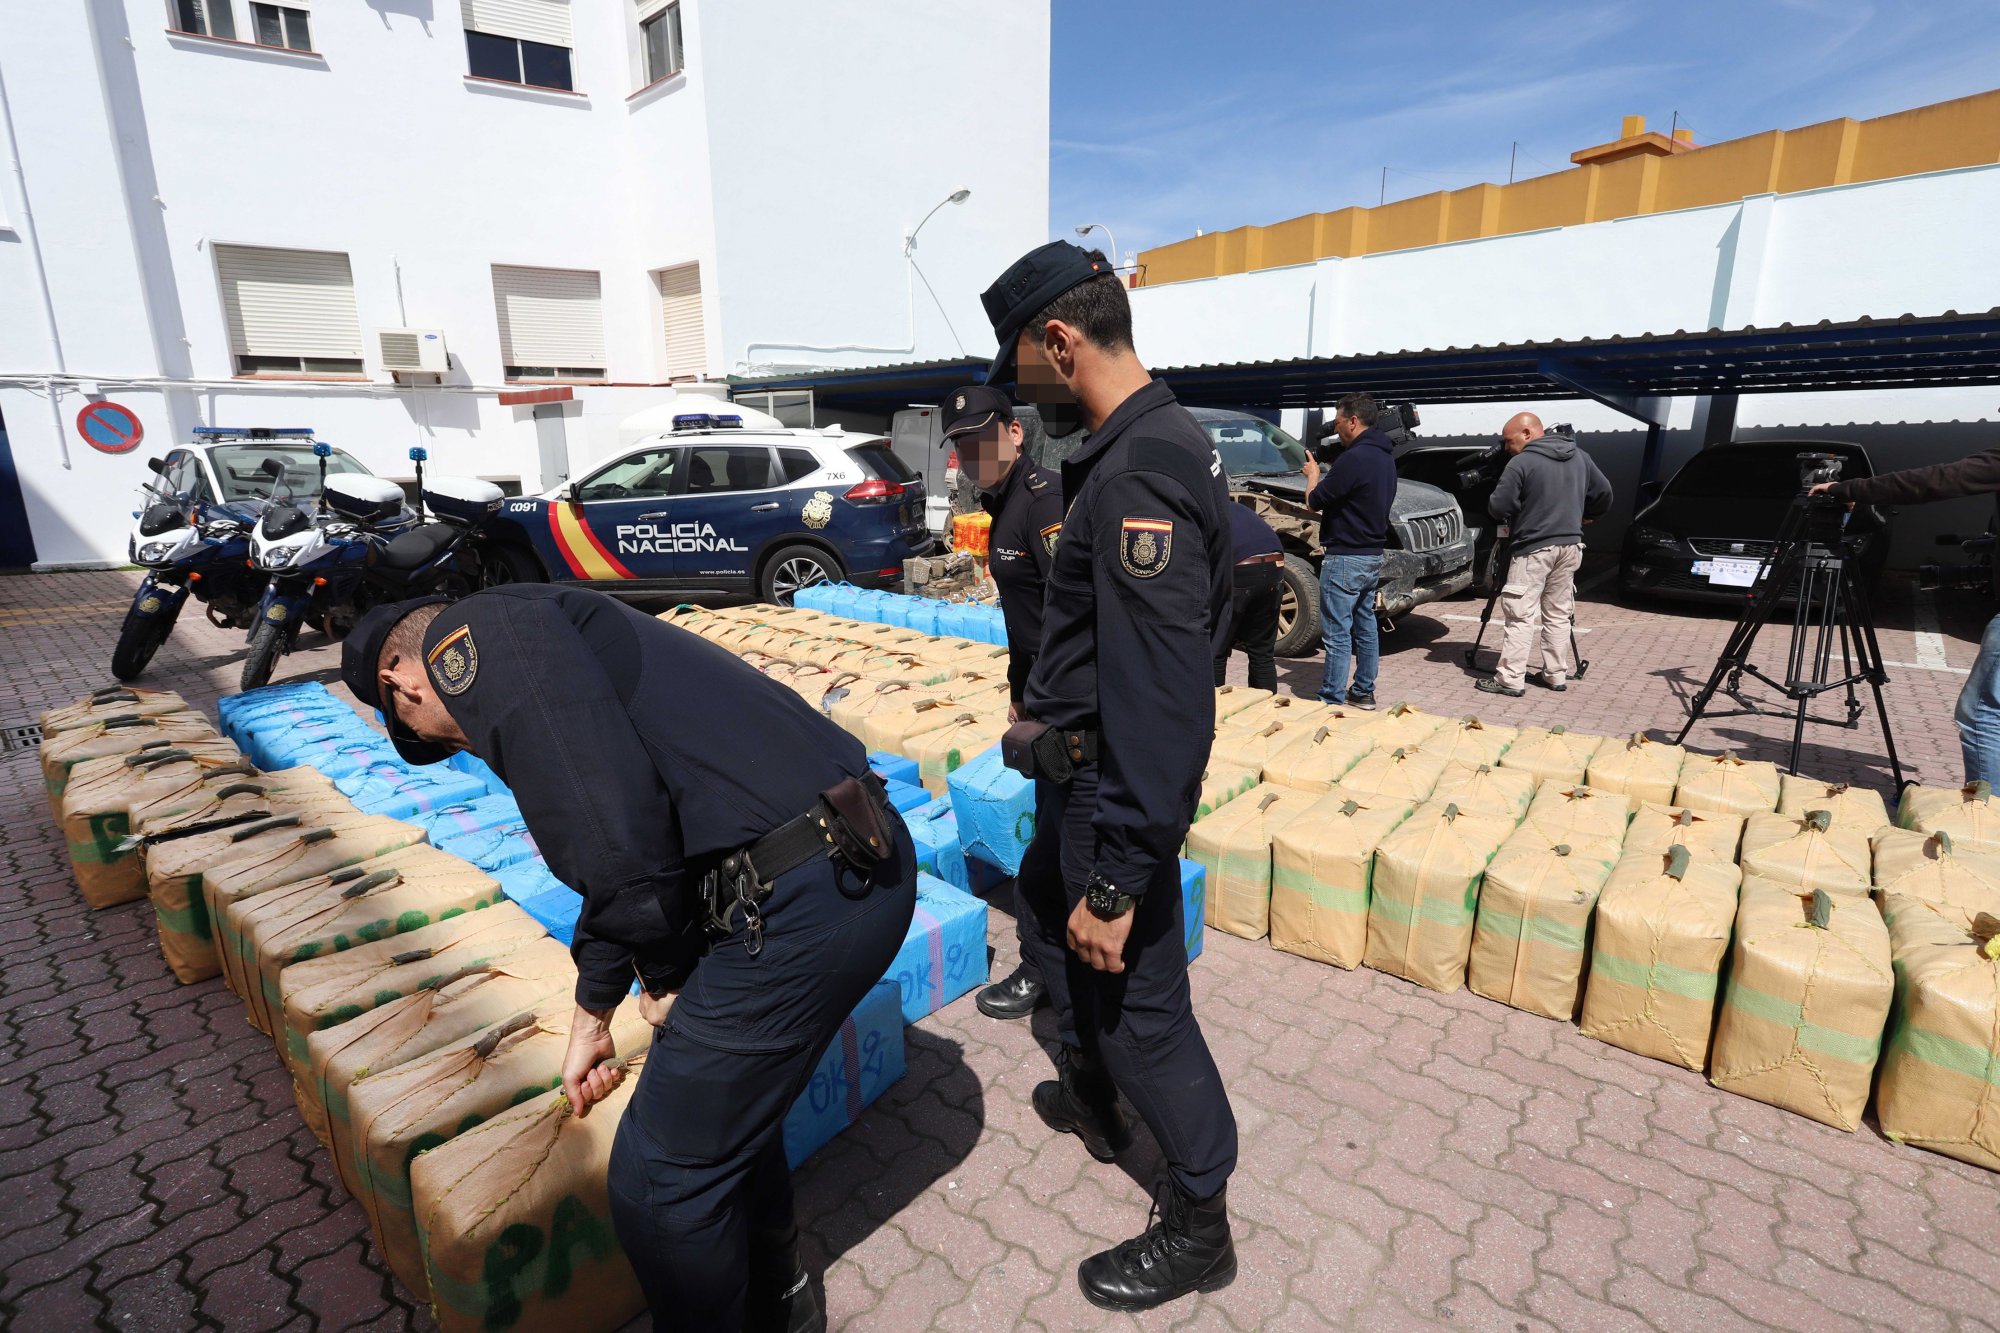 Η Ισπανία κατάσχεσε σχεδόν δύο τόνους μεθαμφεταμίνης – Χτύπημα στο καρτέλ Σιναλόα